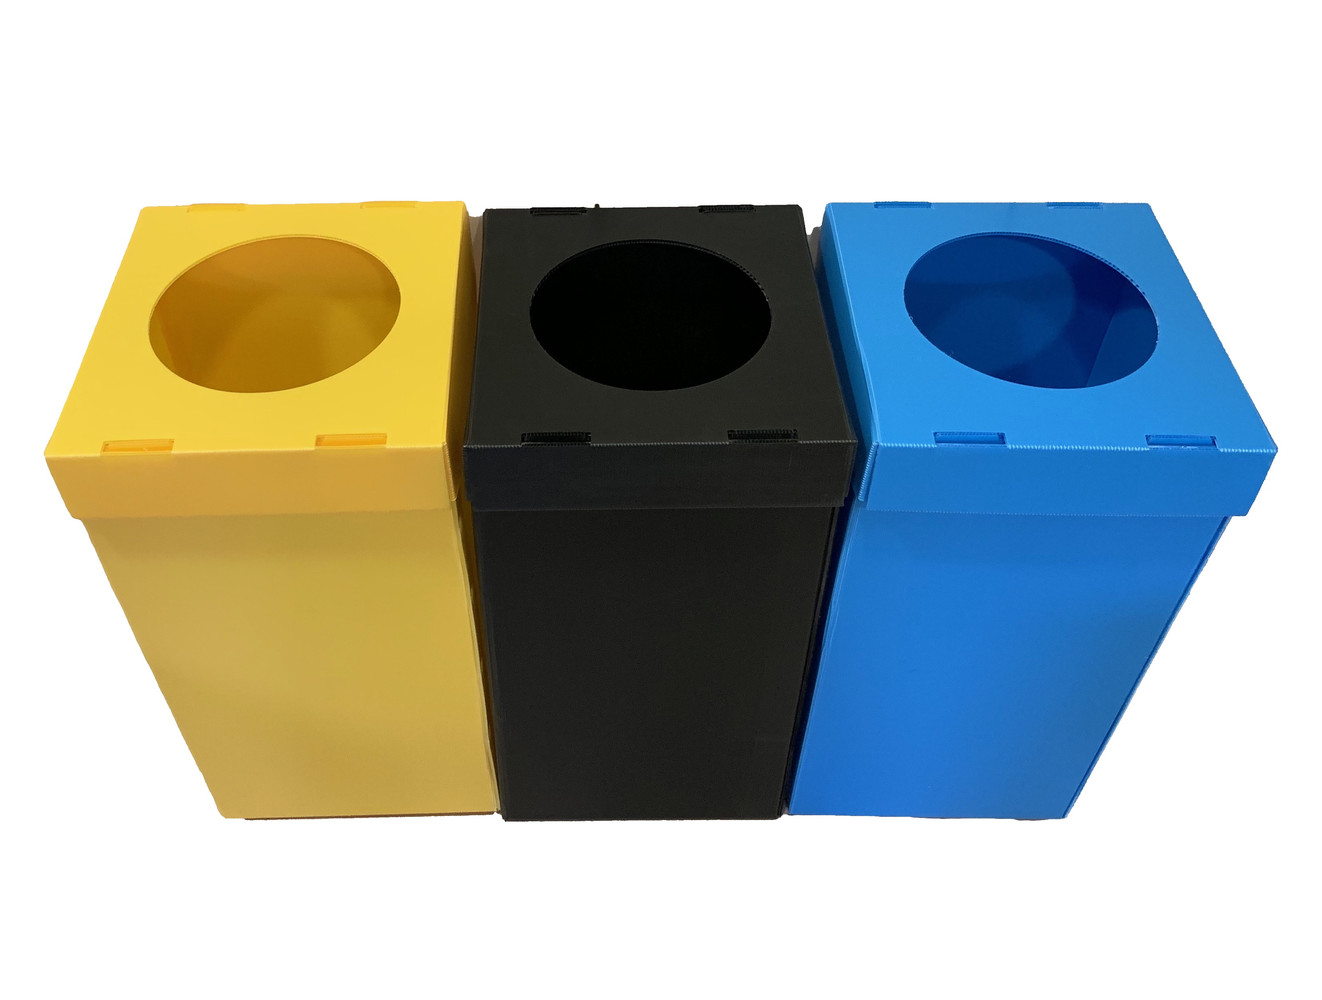 Papelera metálica negra de reciclaje 2 residuos. Capacidad 88 litros  (Amarillo / Azul) - Respira de compres al Ripollès